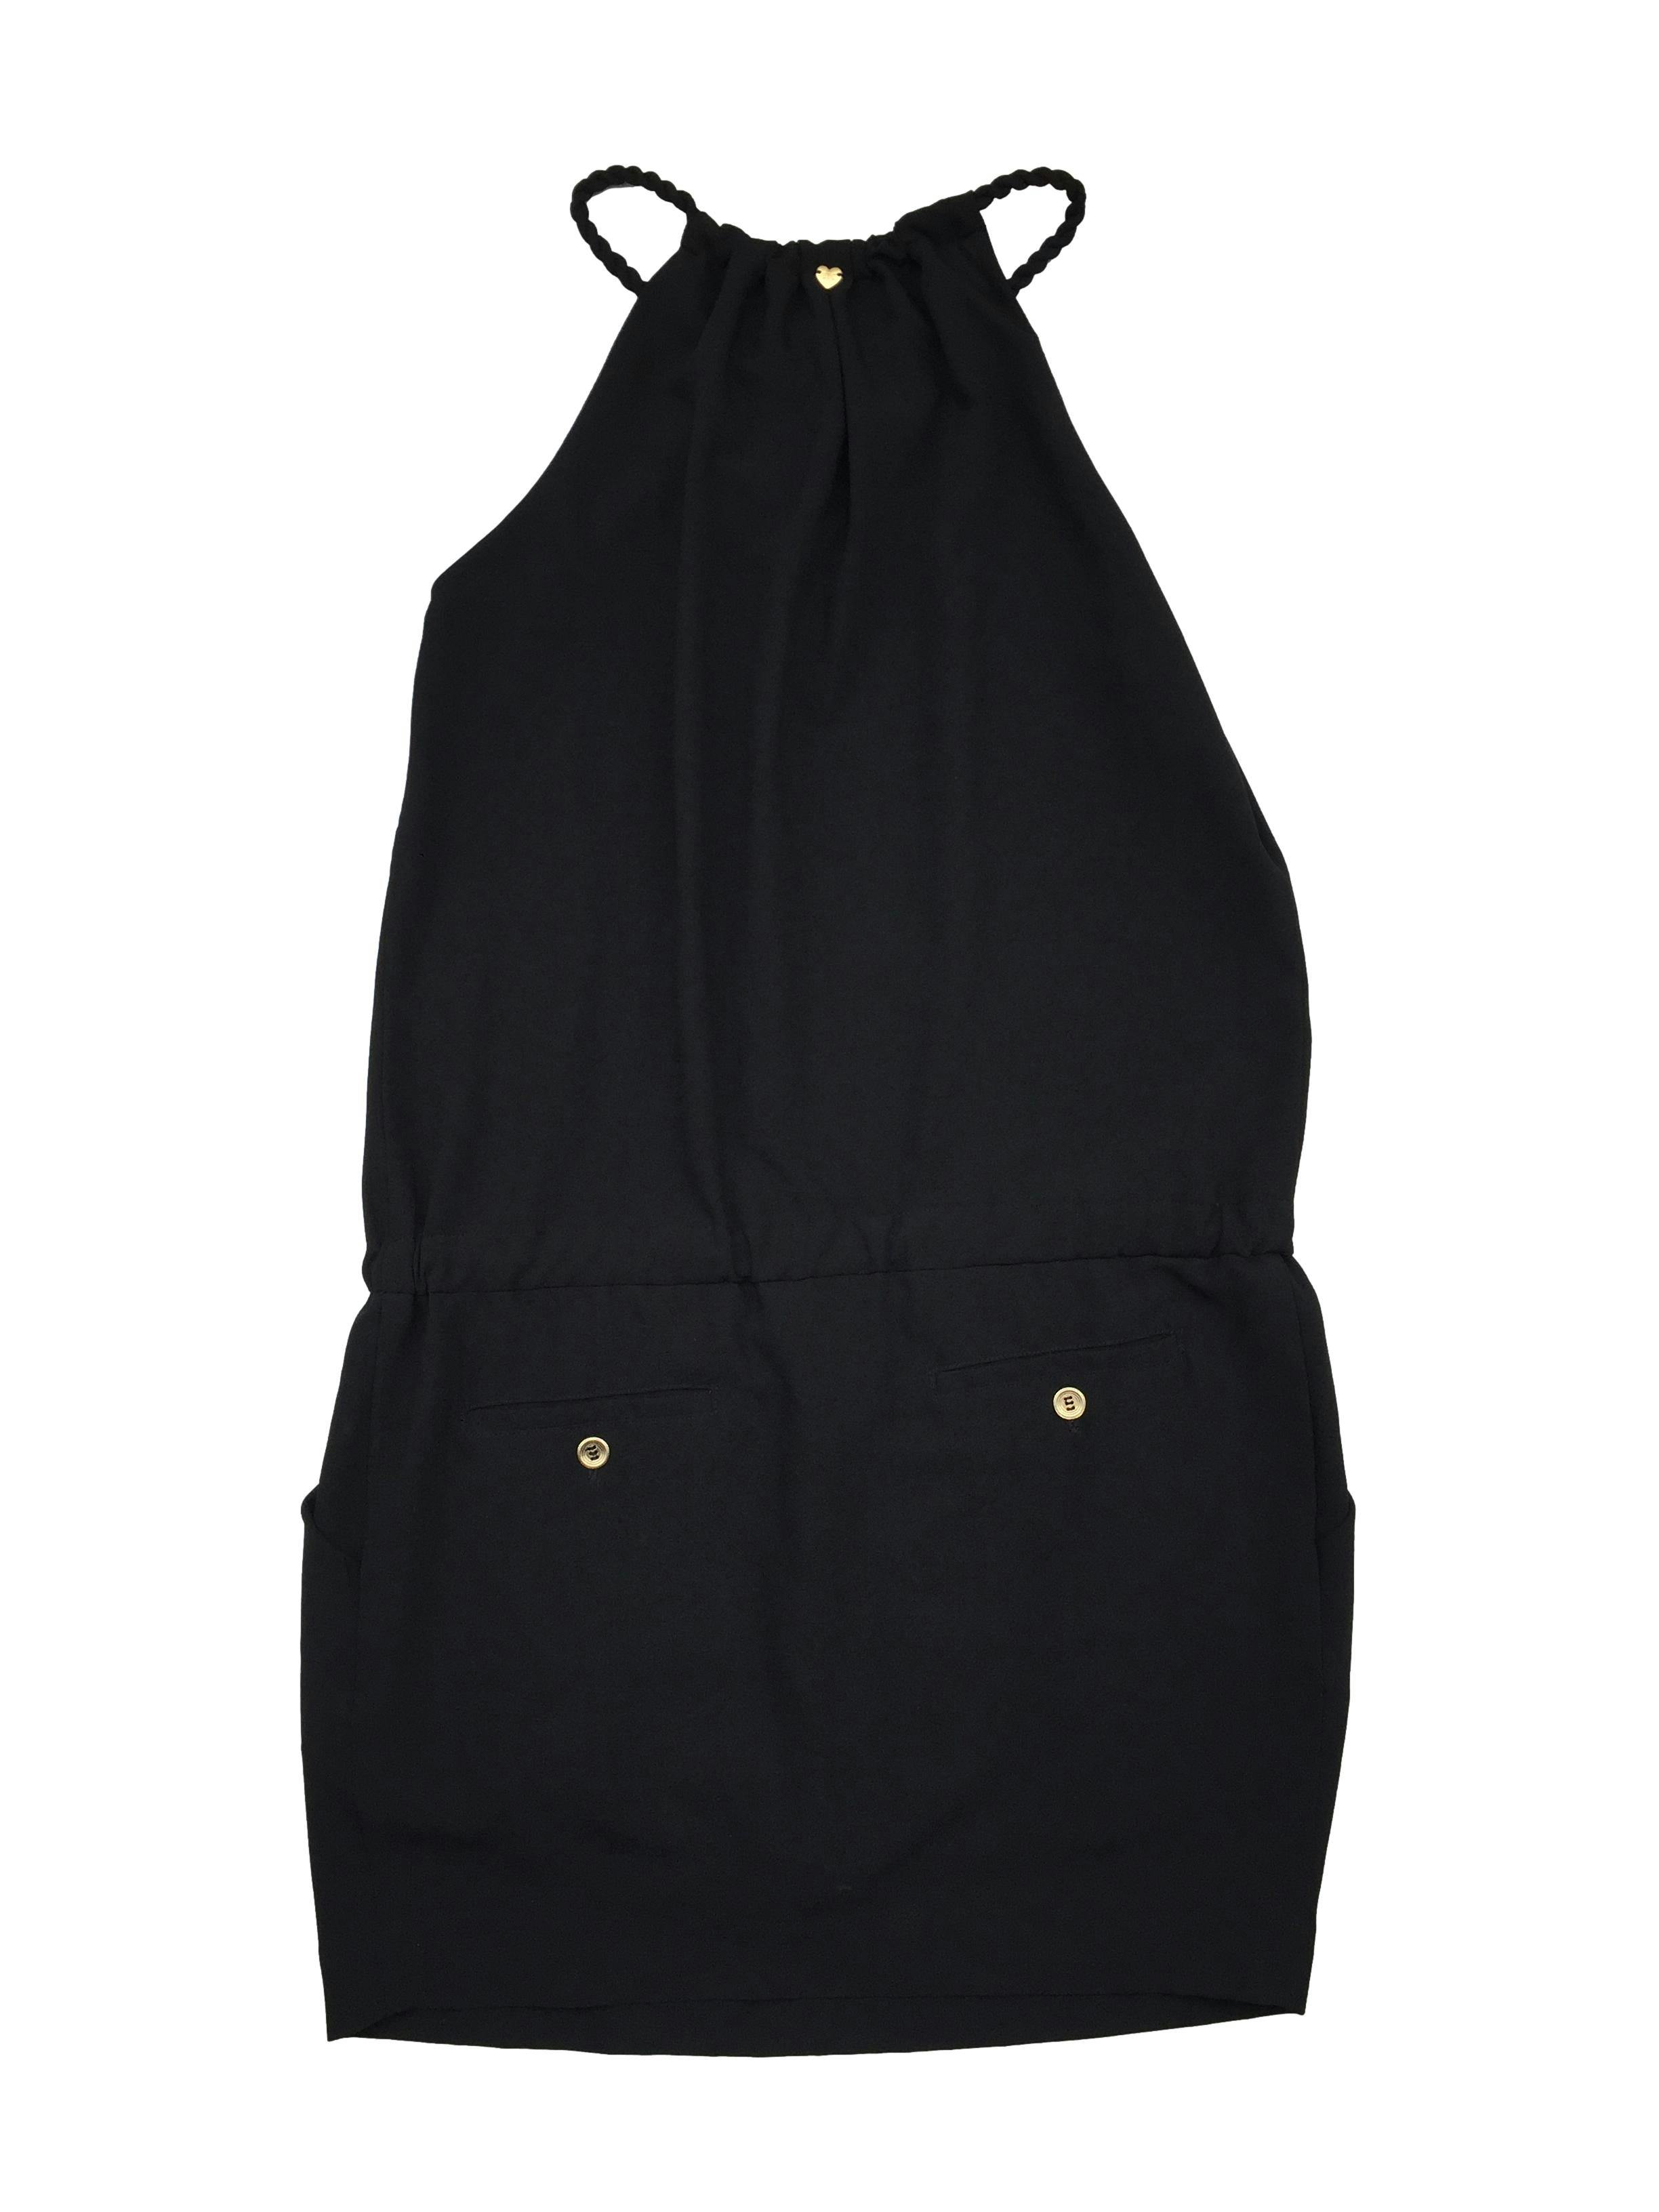 Vestido Etc negro con cuello soga recogido, pretina con cinto regulables y falda con bolsillos. Busto 100cm Largo 80cm